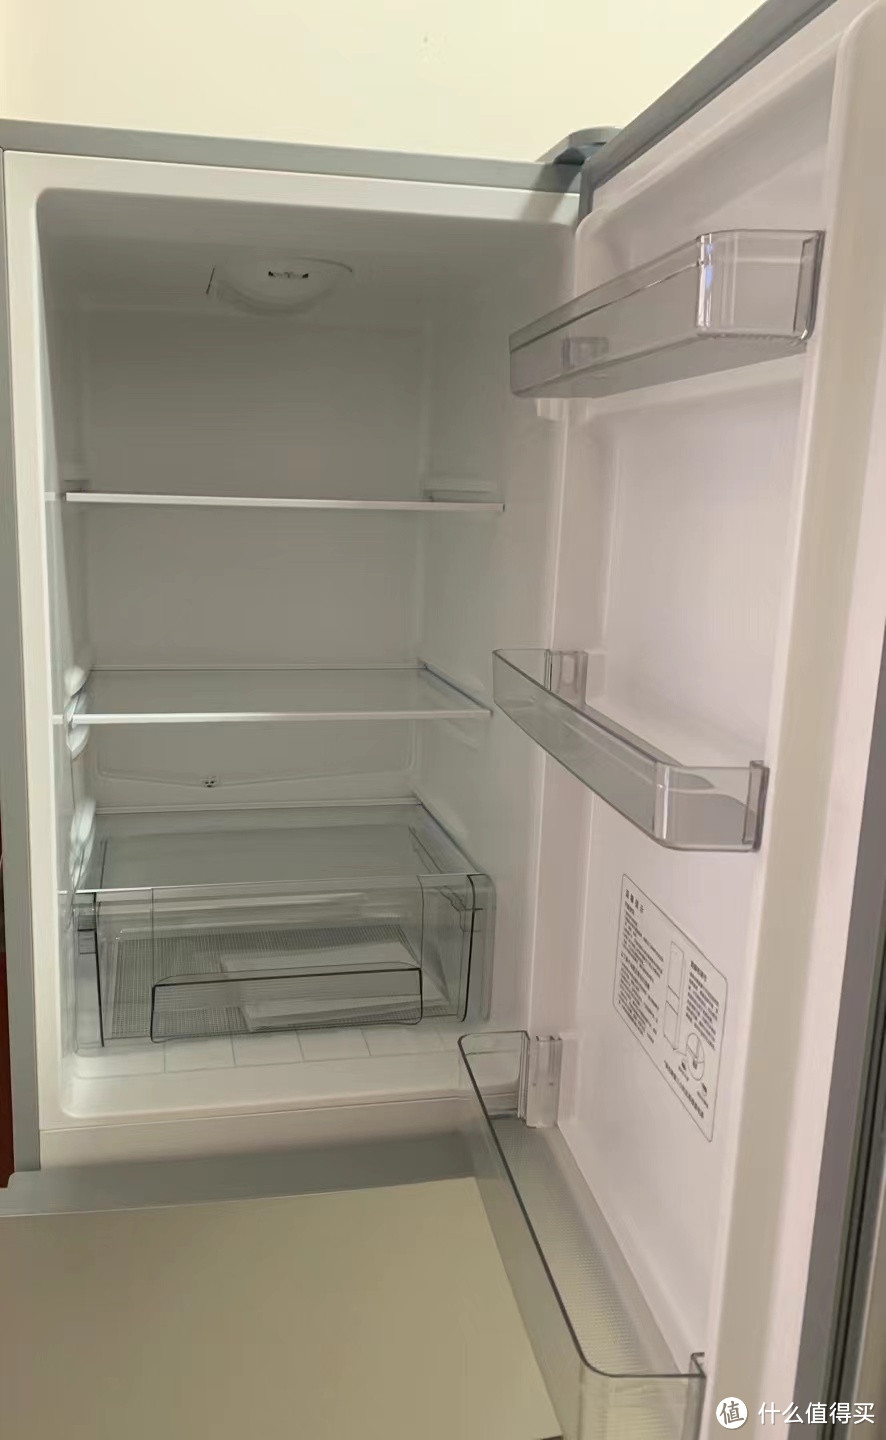 如果你也是小面积的出租房，可以考虑买个它---米家三门冰箱